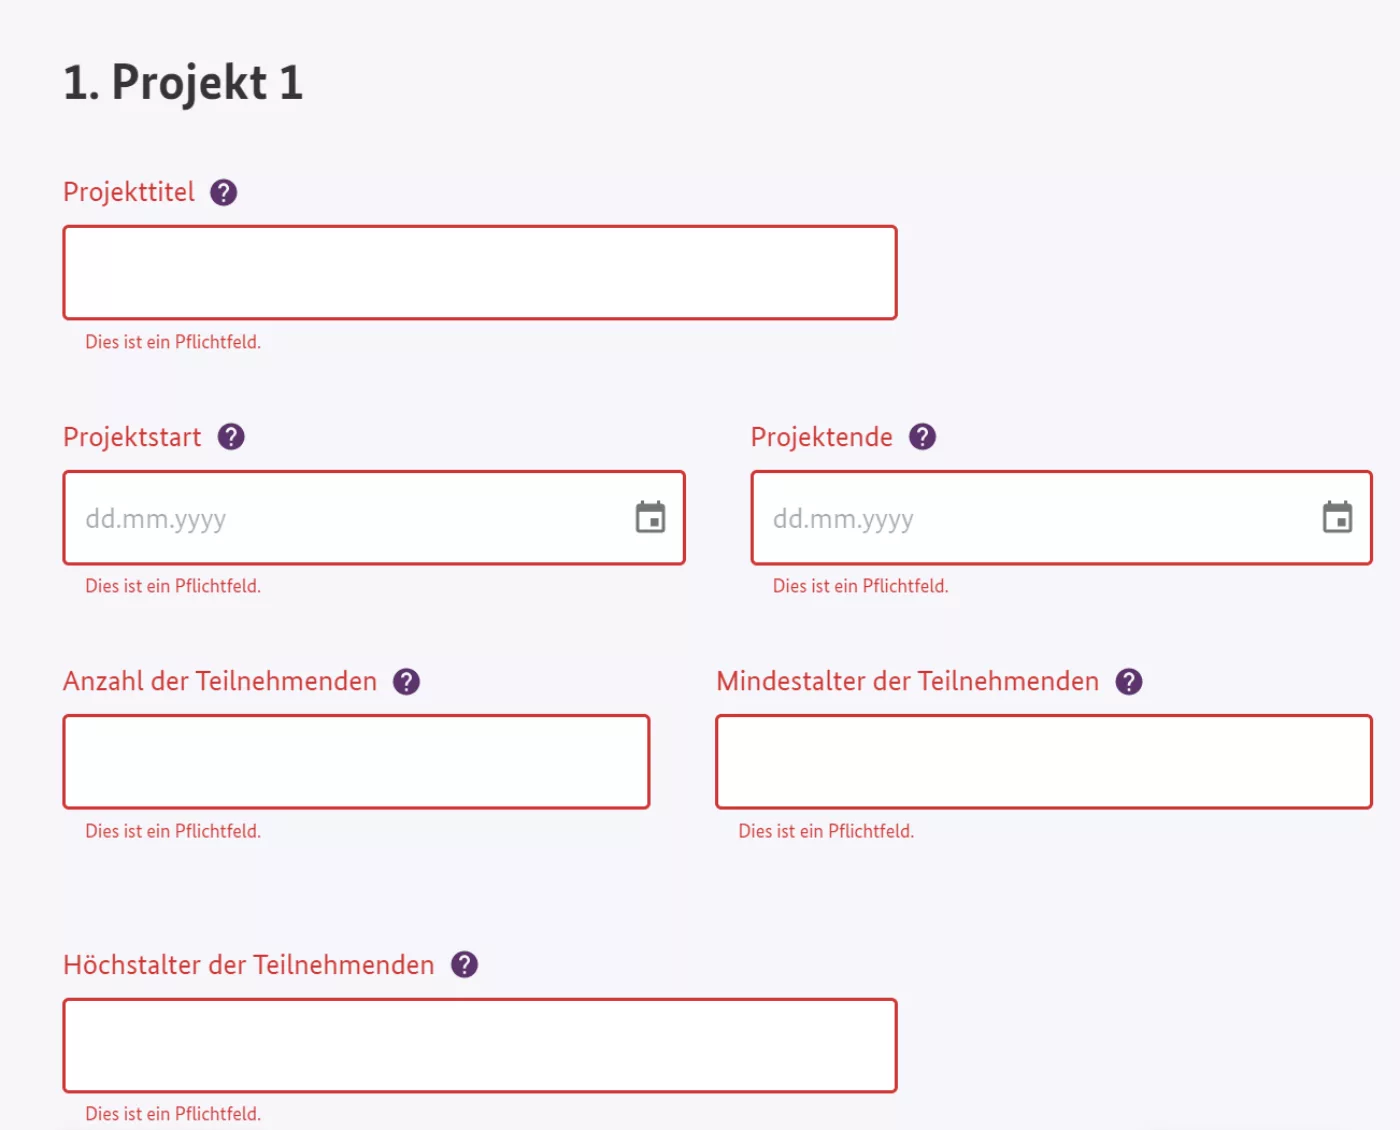 Bildschirmfoto der auszufüllenden Felder für das Projekt 1: Projekttitel, Projektstart und -ende, Anzahl der Teilnehmenden, Mindestalter der Teilnehmenden. Fortsetzung im nächsten Bild.